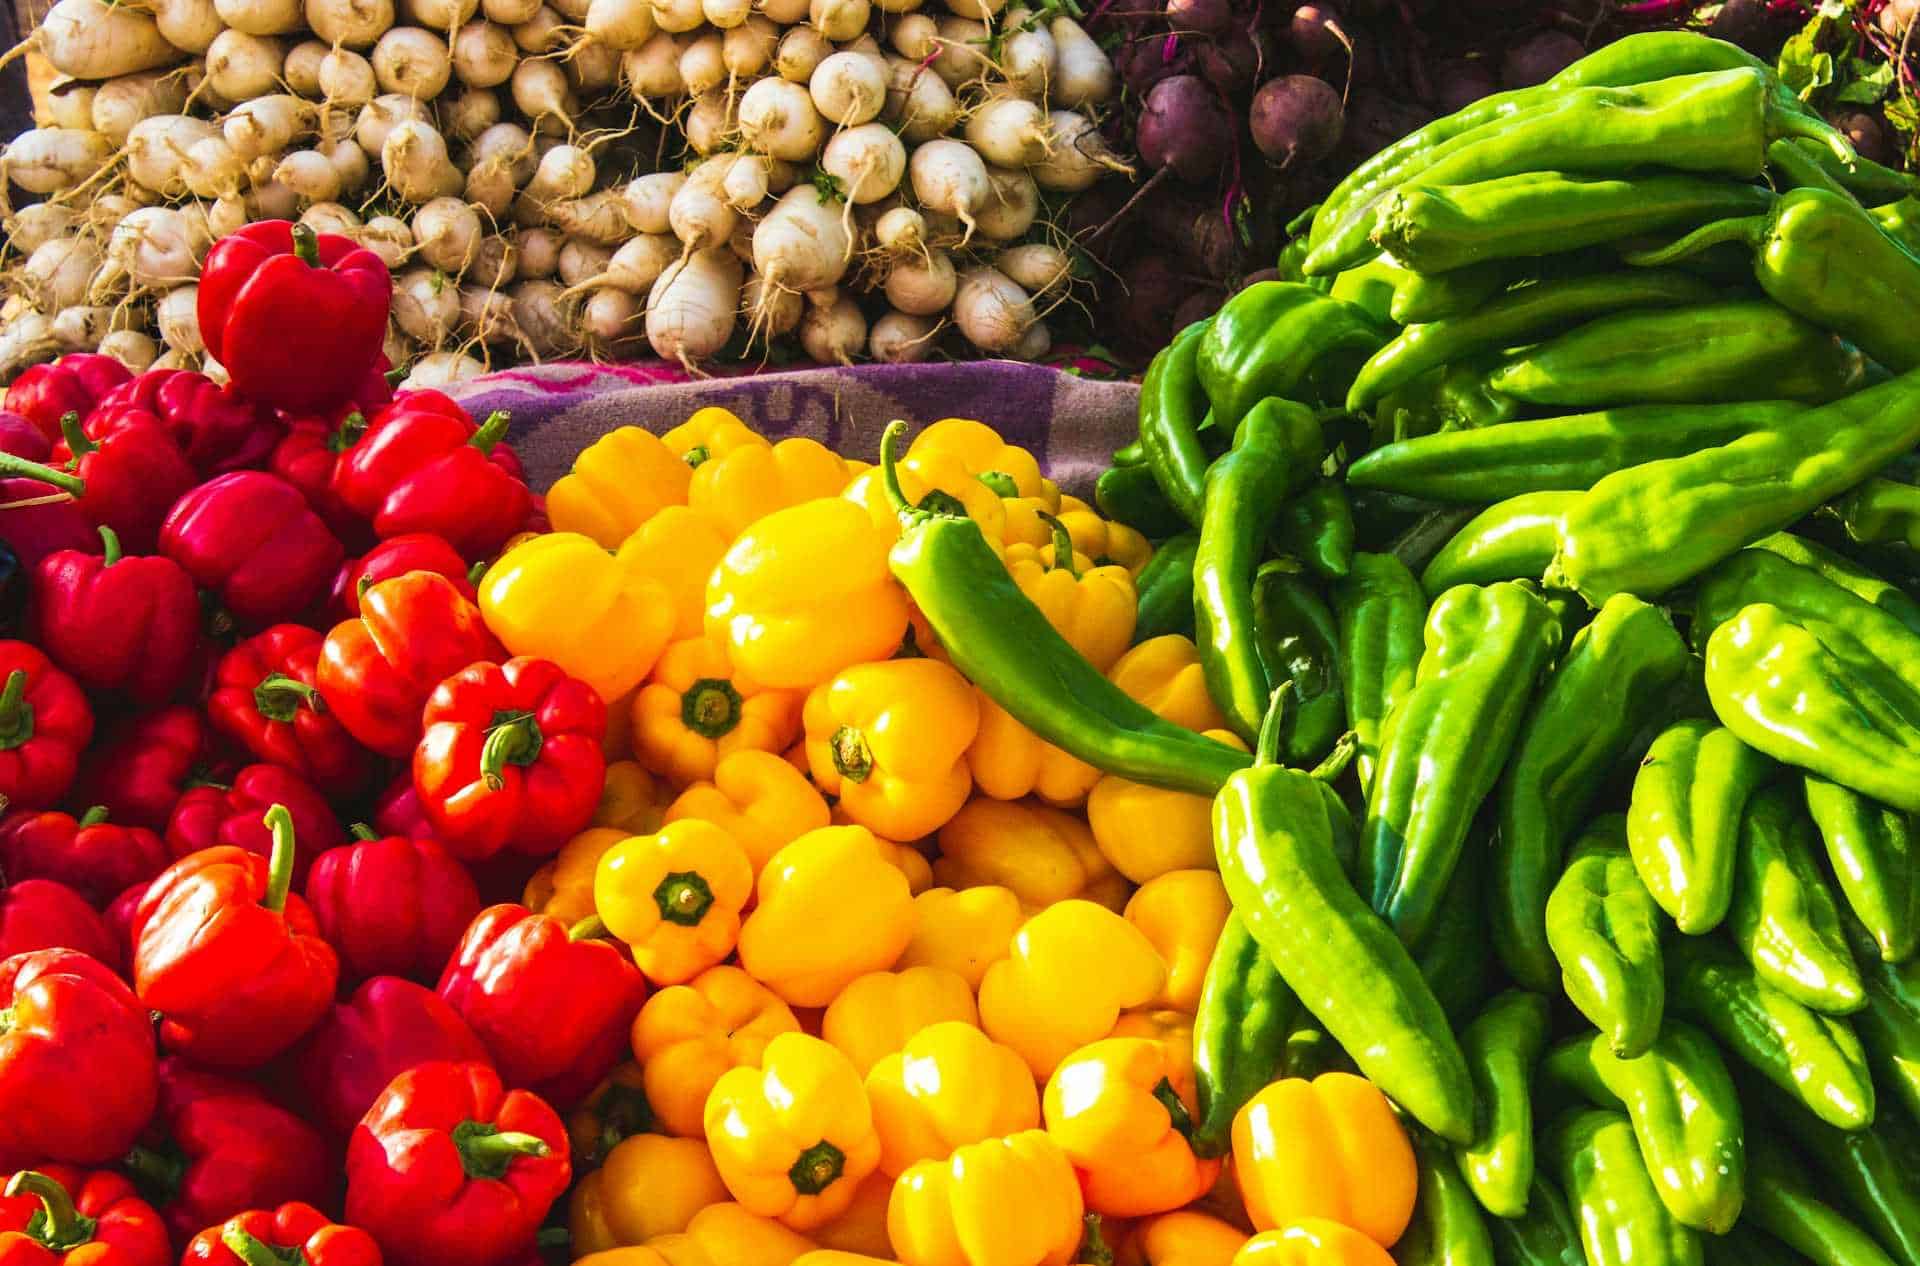 Ofertas del Martimiércoles de frutas y verduras en Chedraui para el 16 y 17 de abril
